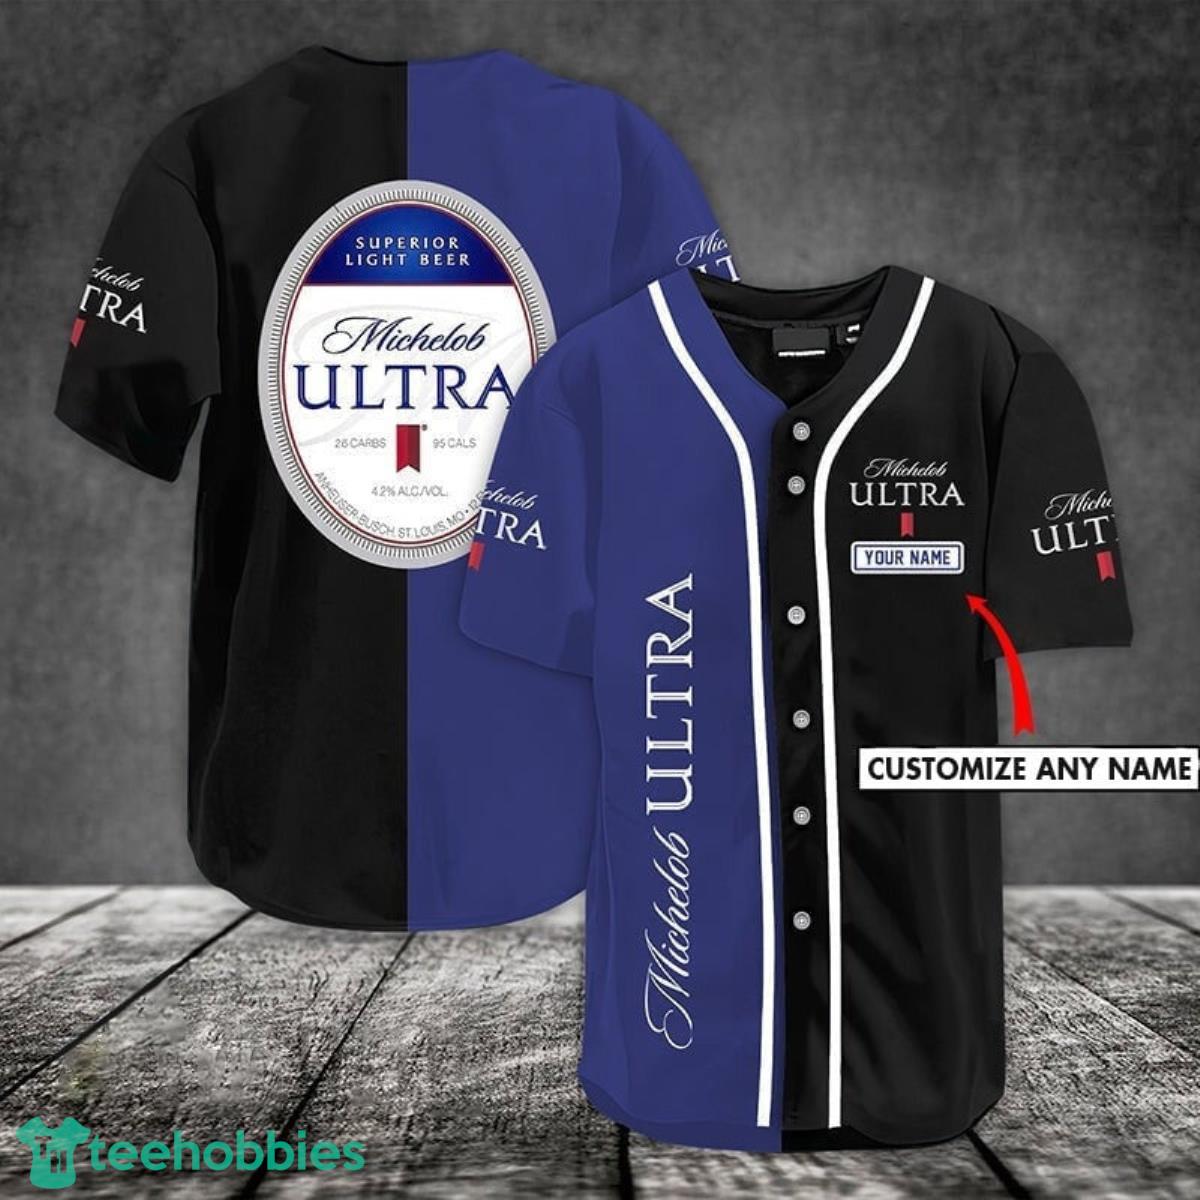 Customized Michelob Ultra Baseball Jersey Product Photo 1